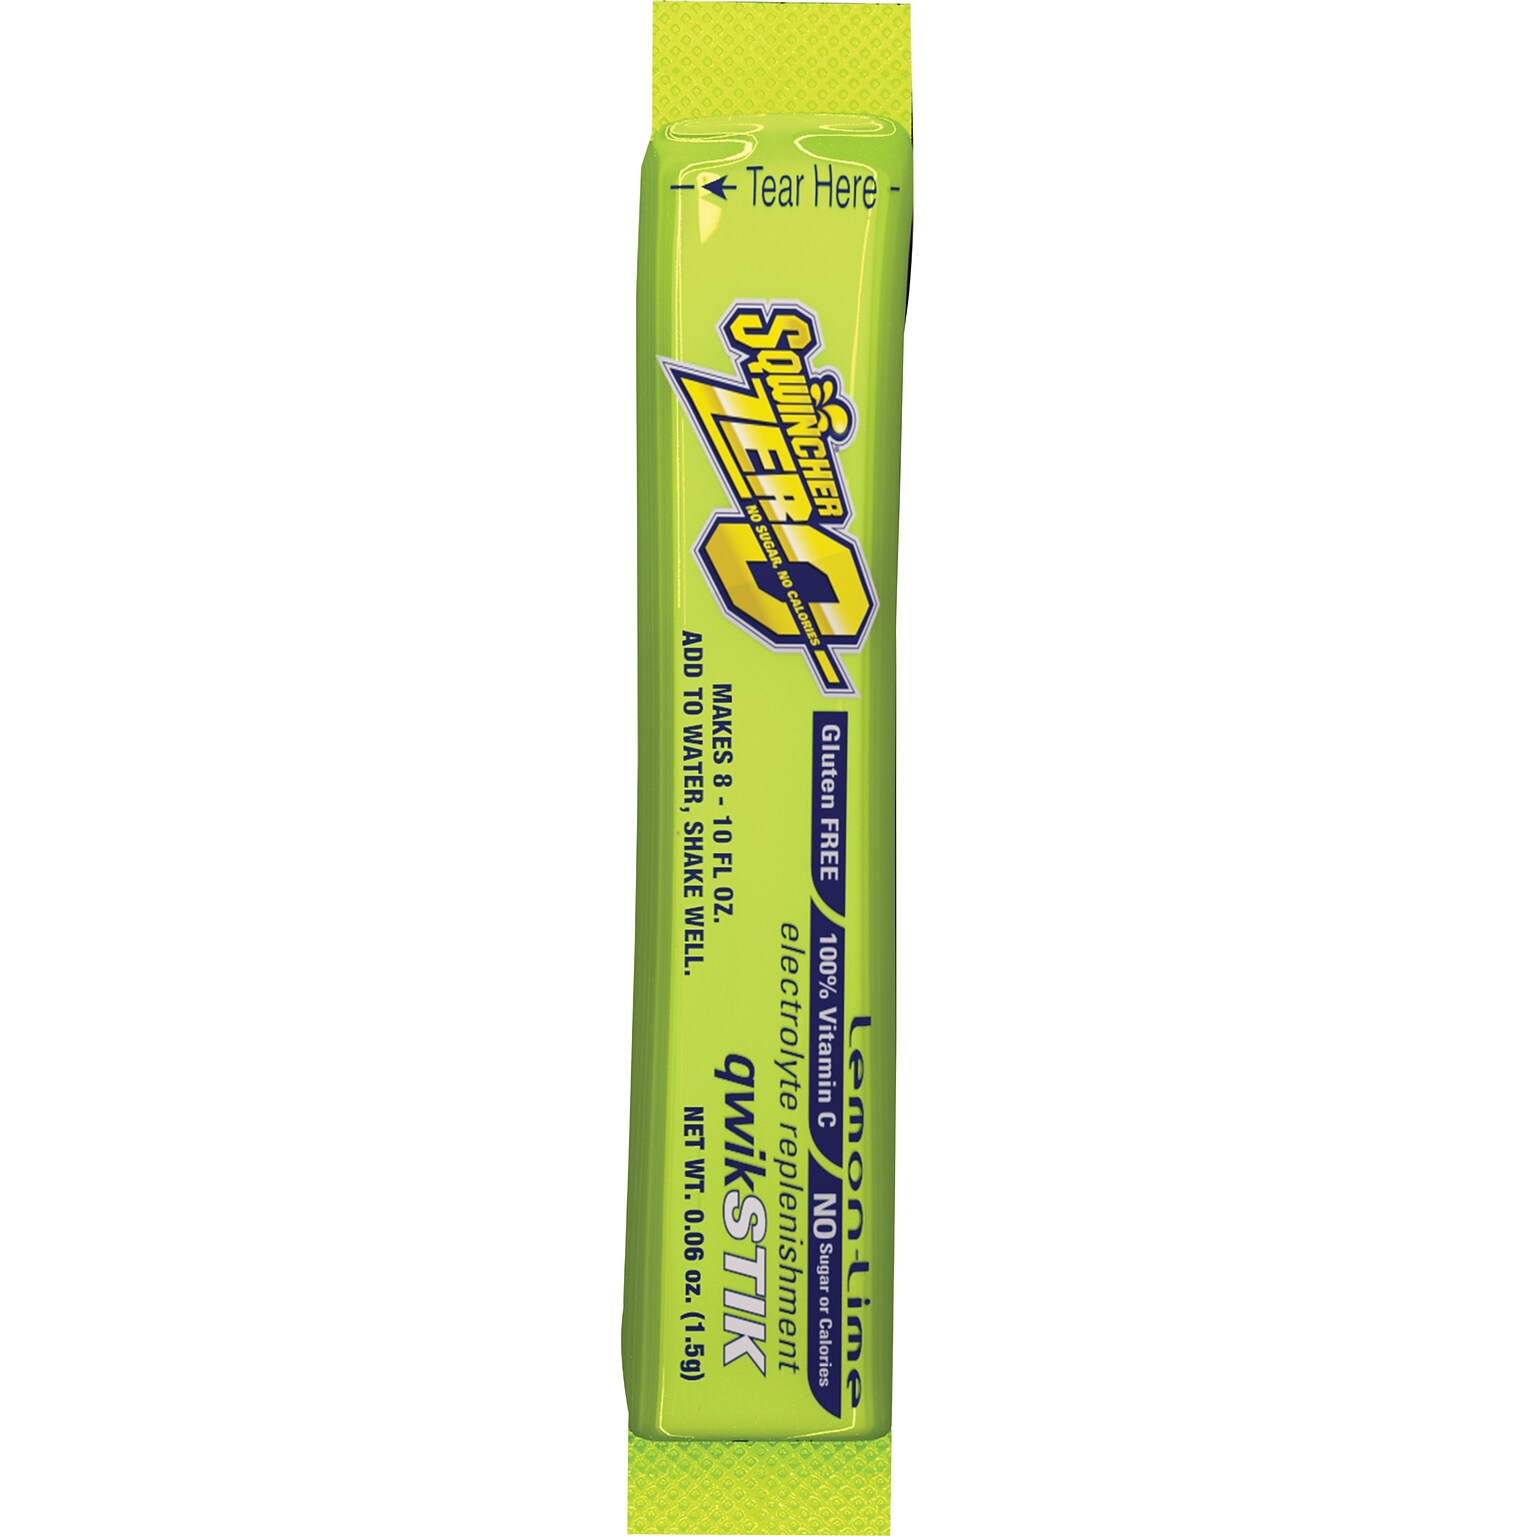 Sqwincher ZERO Qwik Stik Powder Concentrate Energy Drink, 0.6 oz. Stik, Lemon-Lime, 500/Carton (690-060205-LL)